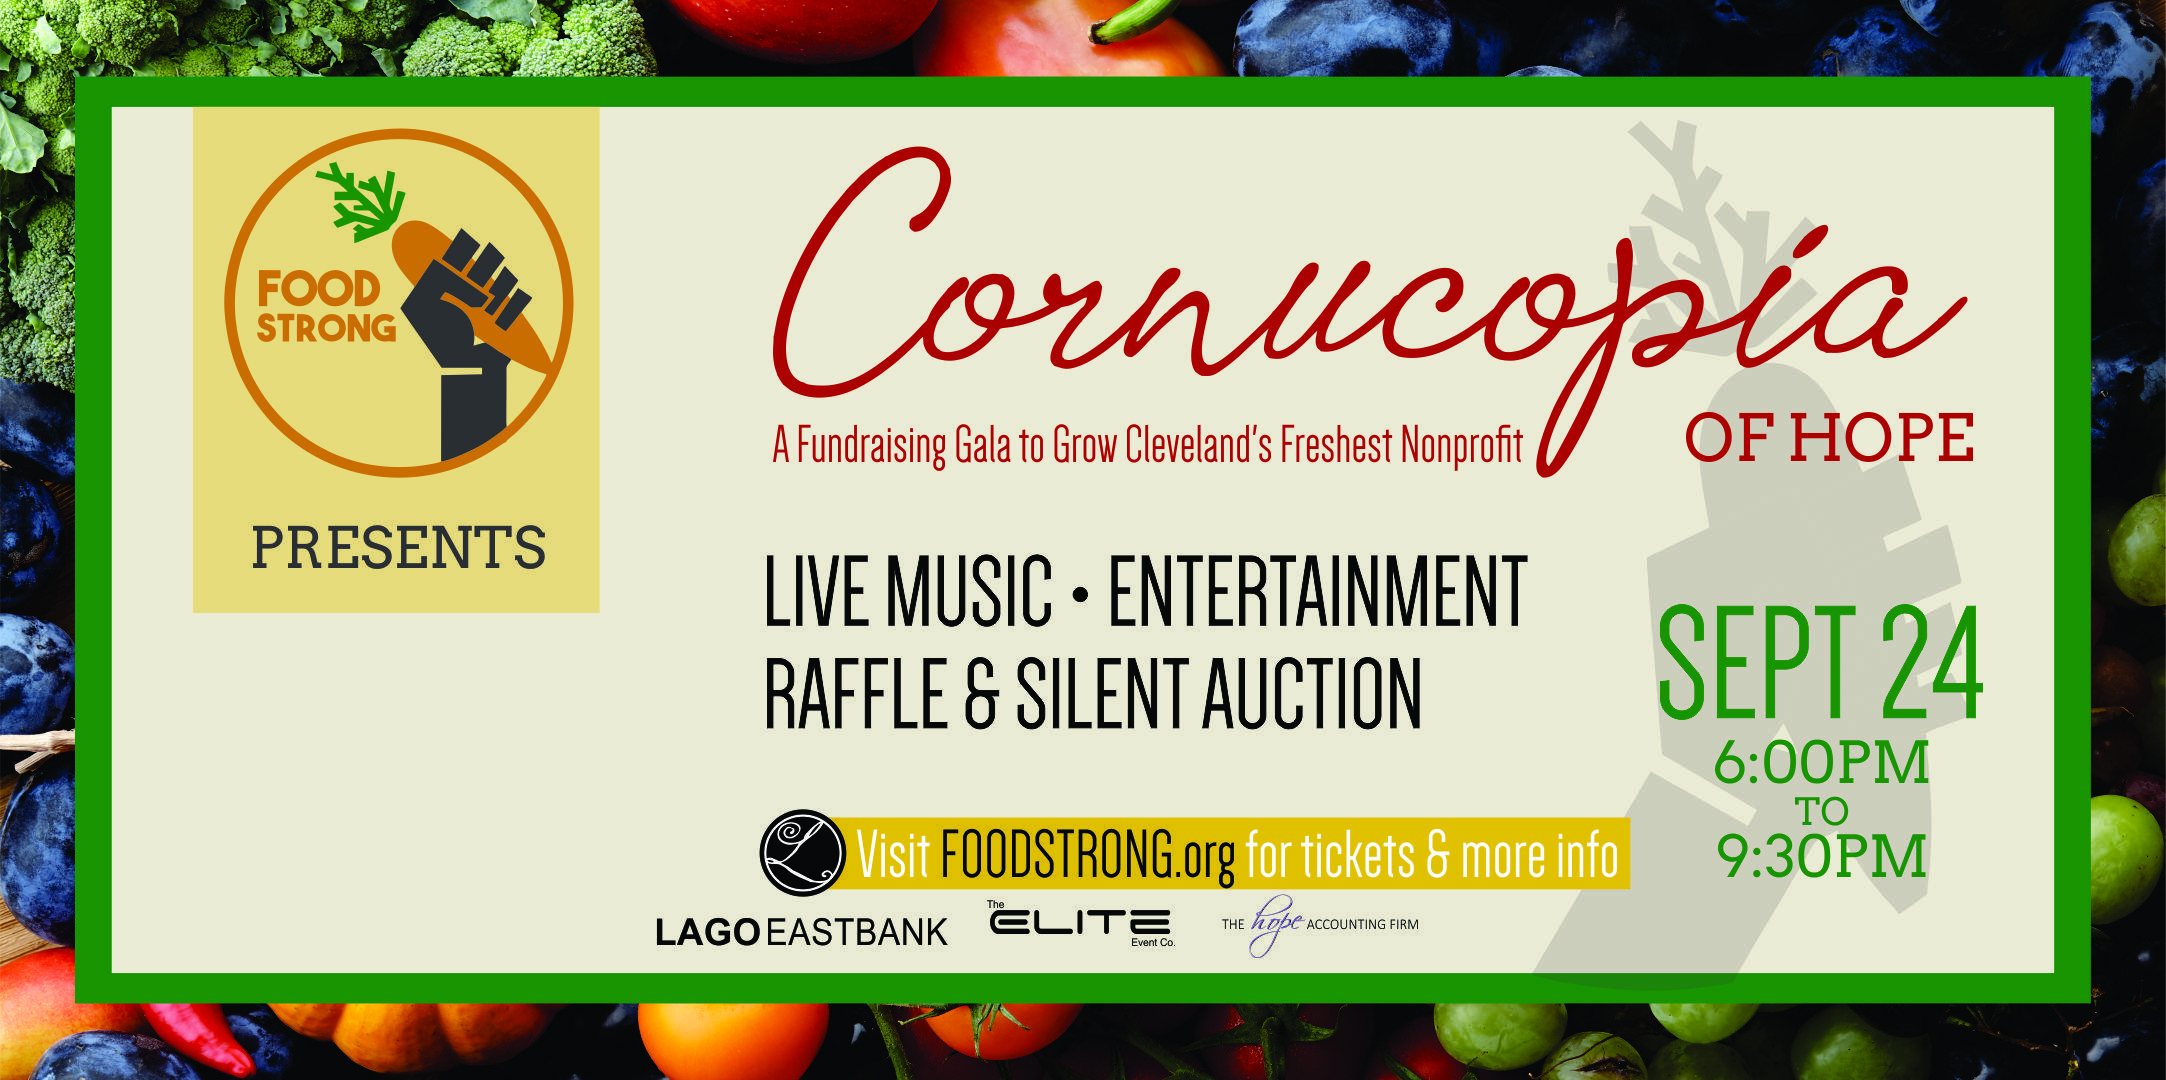 Cornucopia of Hope:A Fundraising Gala to Grow Clevelands Freshest Nonprofit